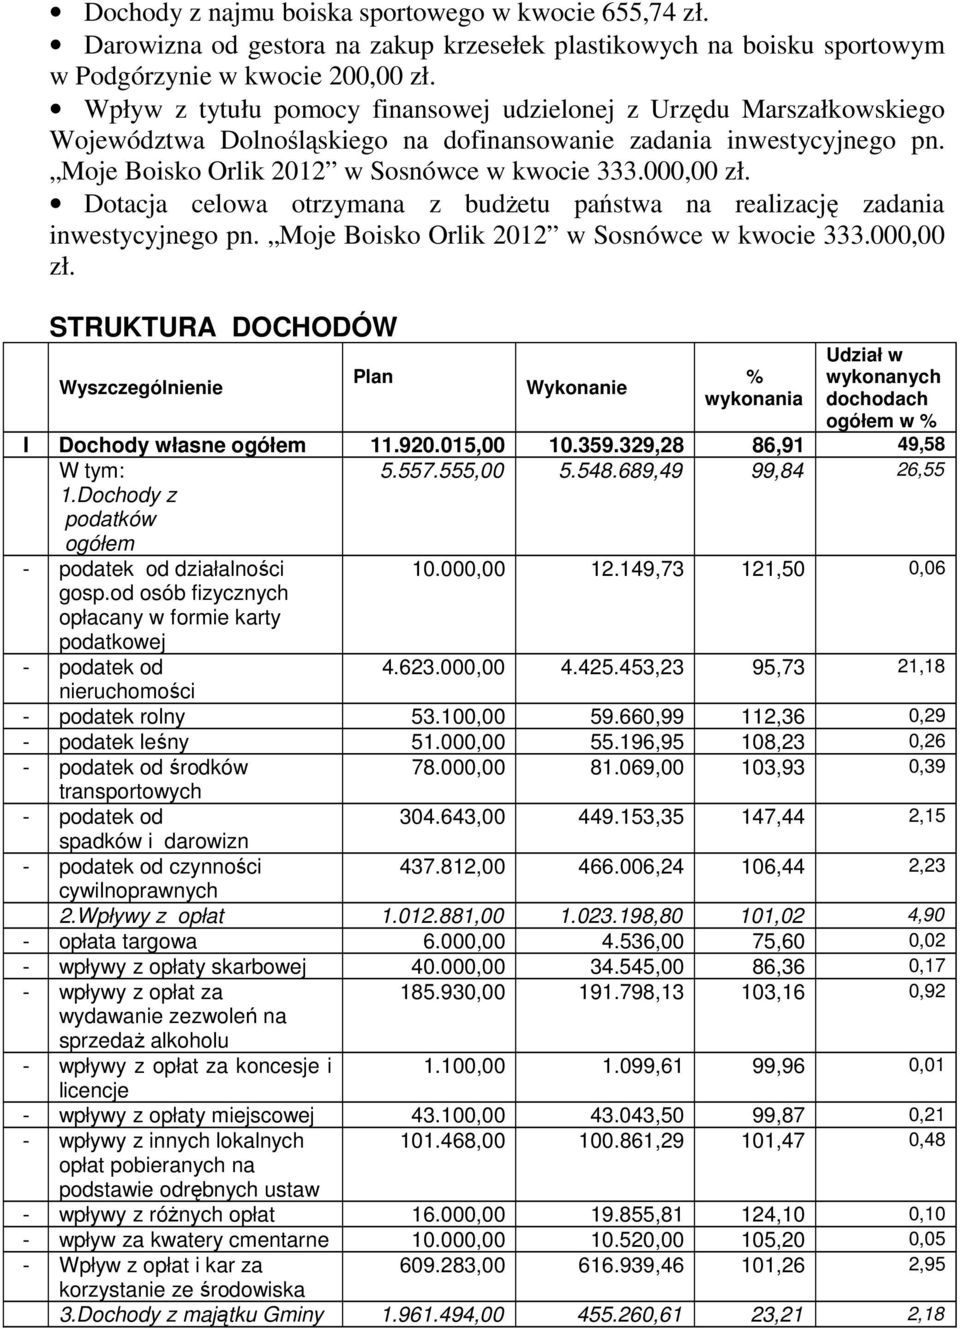 Dotacja celowa otrzymana z budżetu państwa na realizację zadania inwestycyjnego pn. Moje Boisko Orlik 2012 w Sosnówce w kwocie 333.000,00 zł.